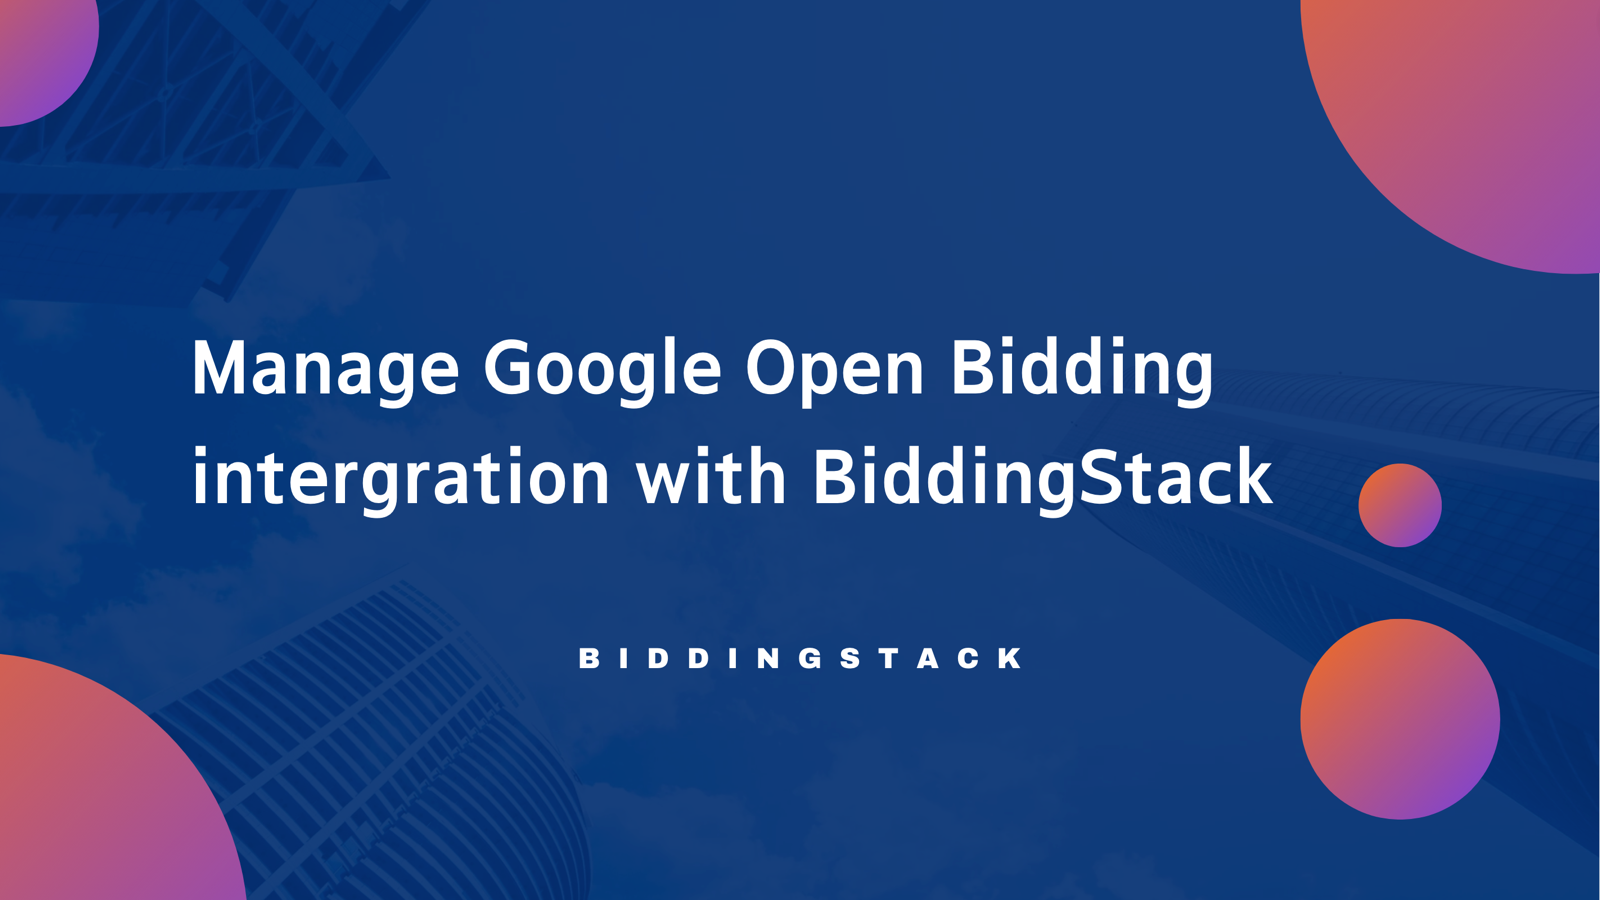 Google open bidding with BiddingStack